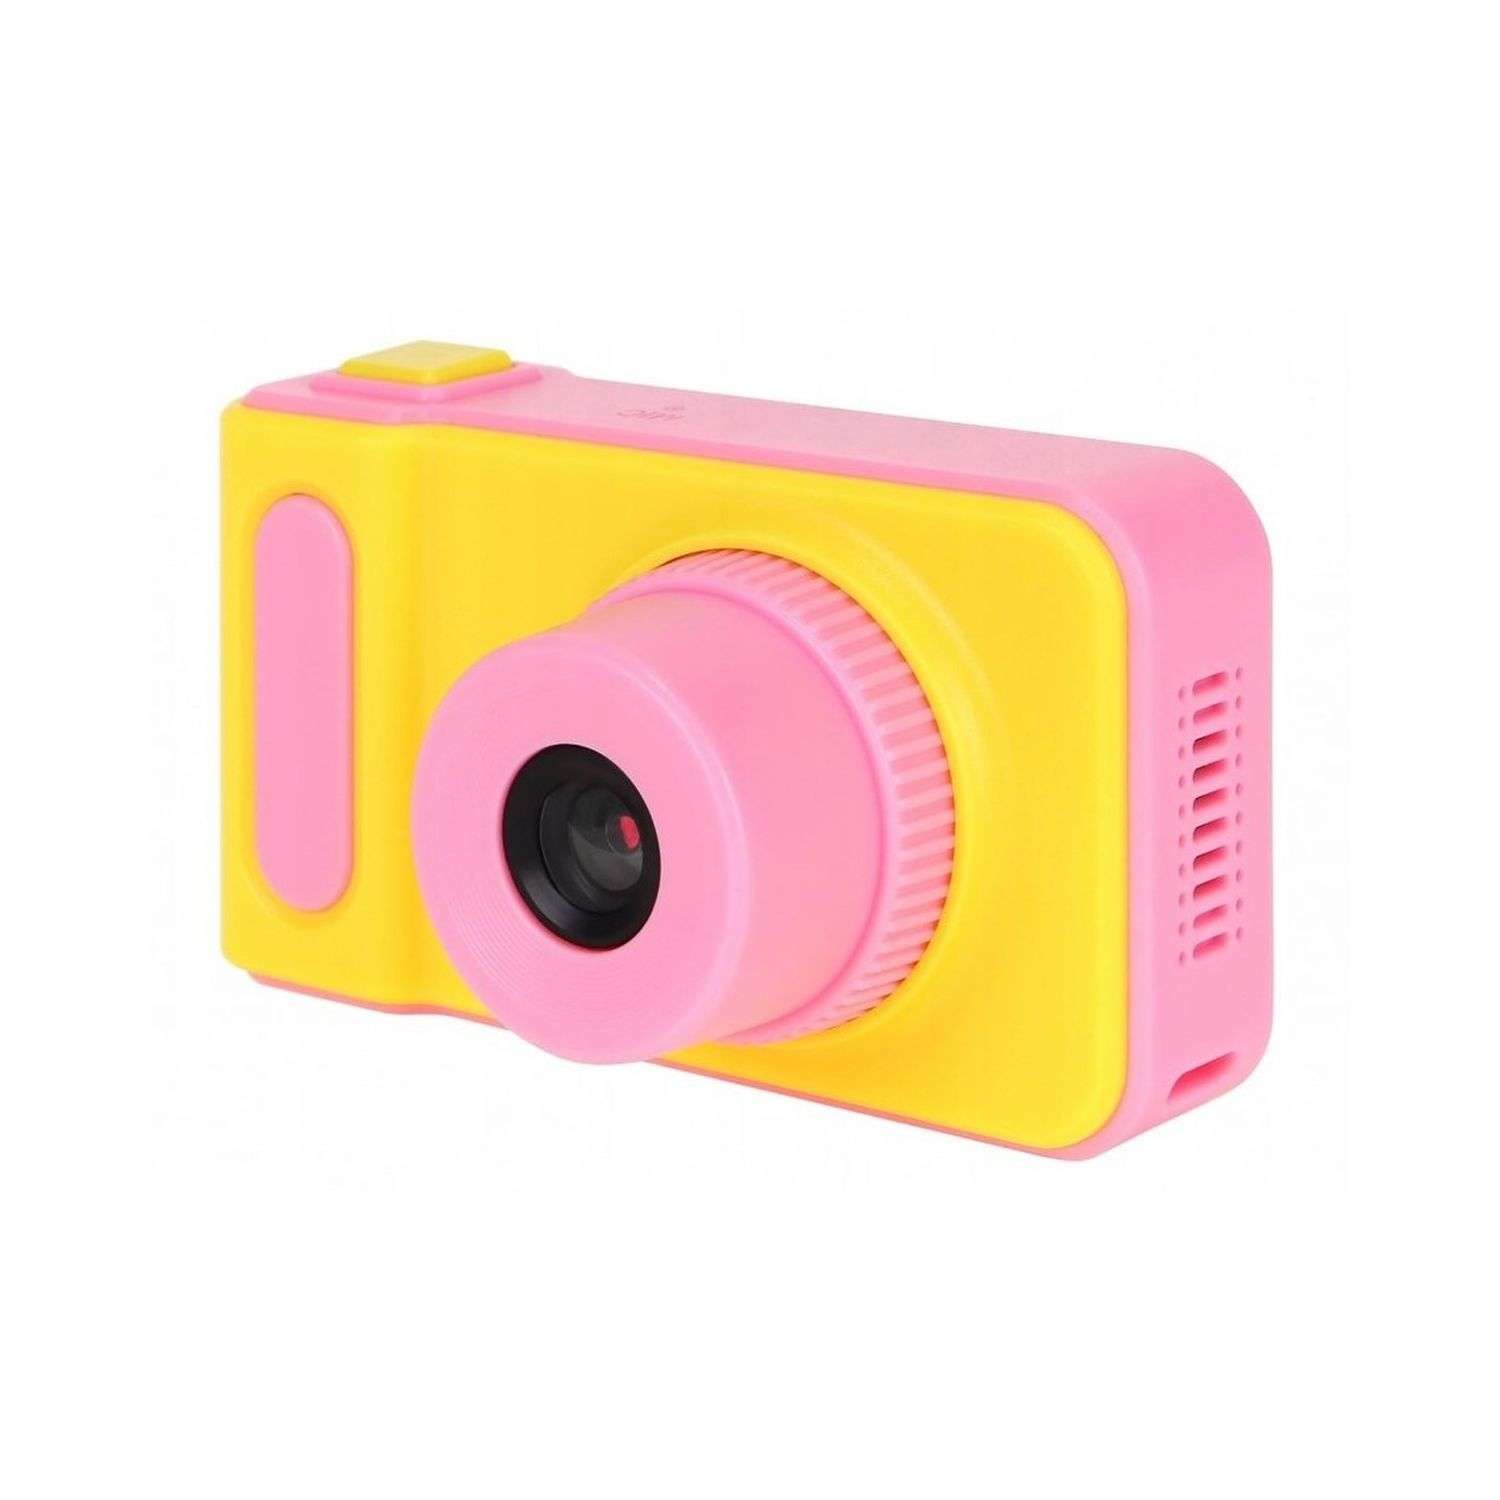 Фотоаппарат Uniglodis детский розовый - фото 2